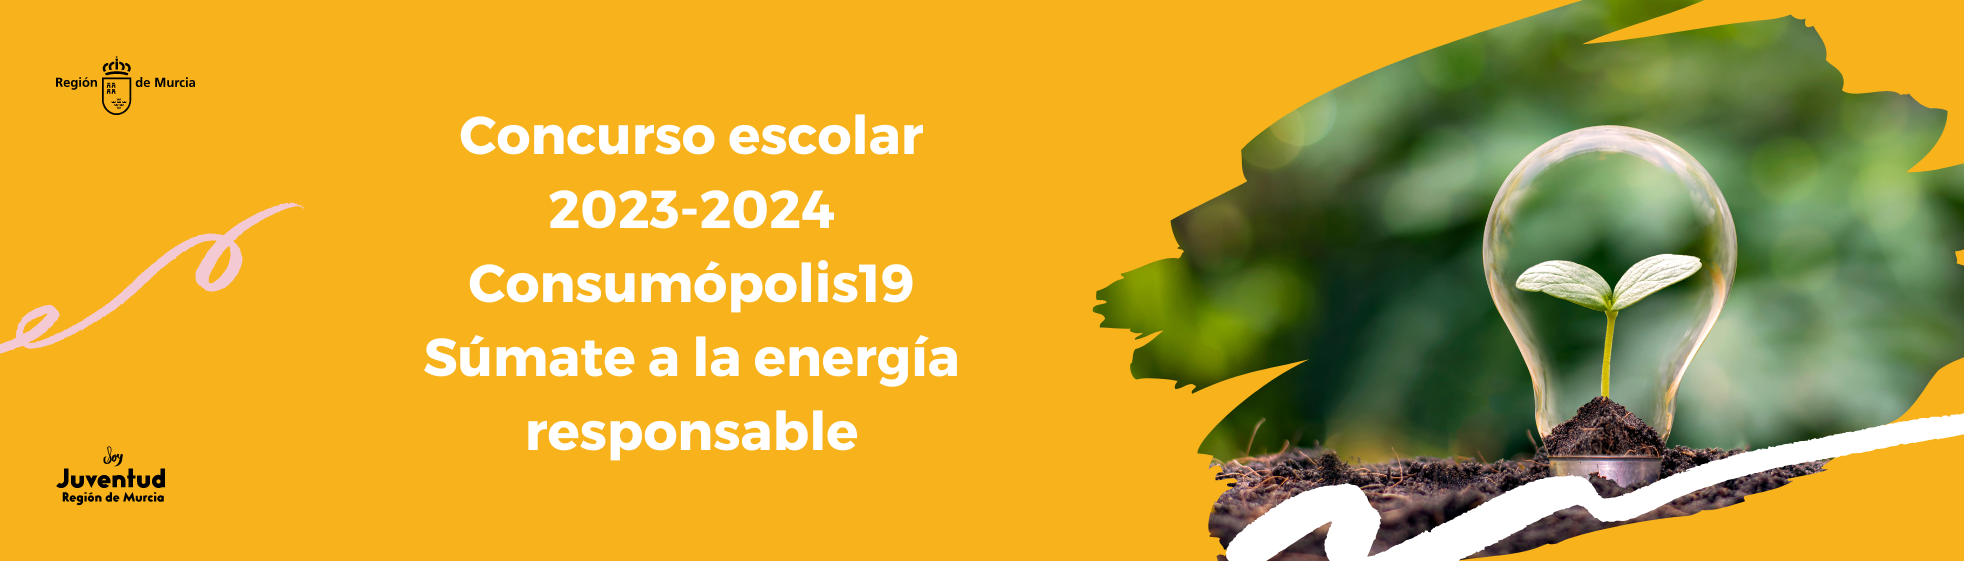 Concurso escolar 2023-2024 Consumópolis19 Súmate a la energía responsable.